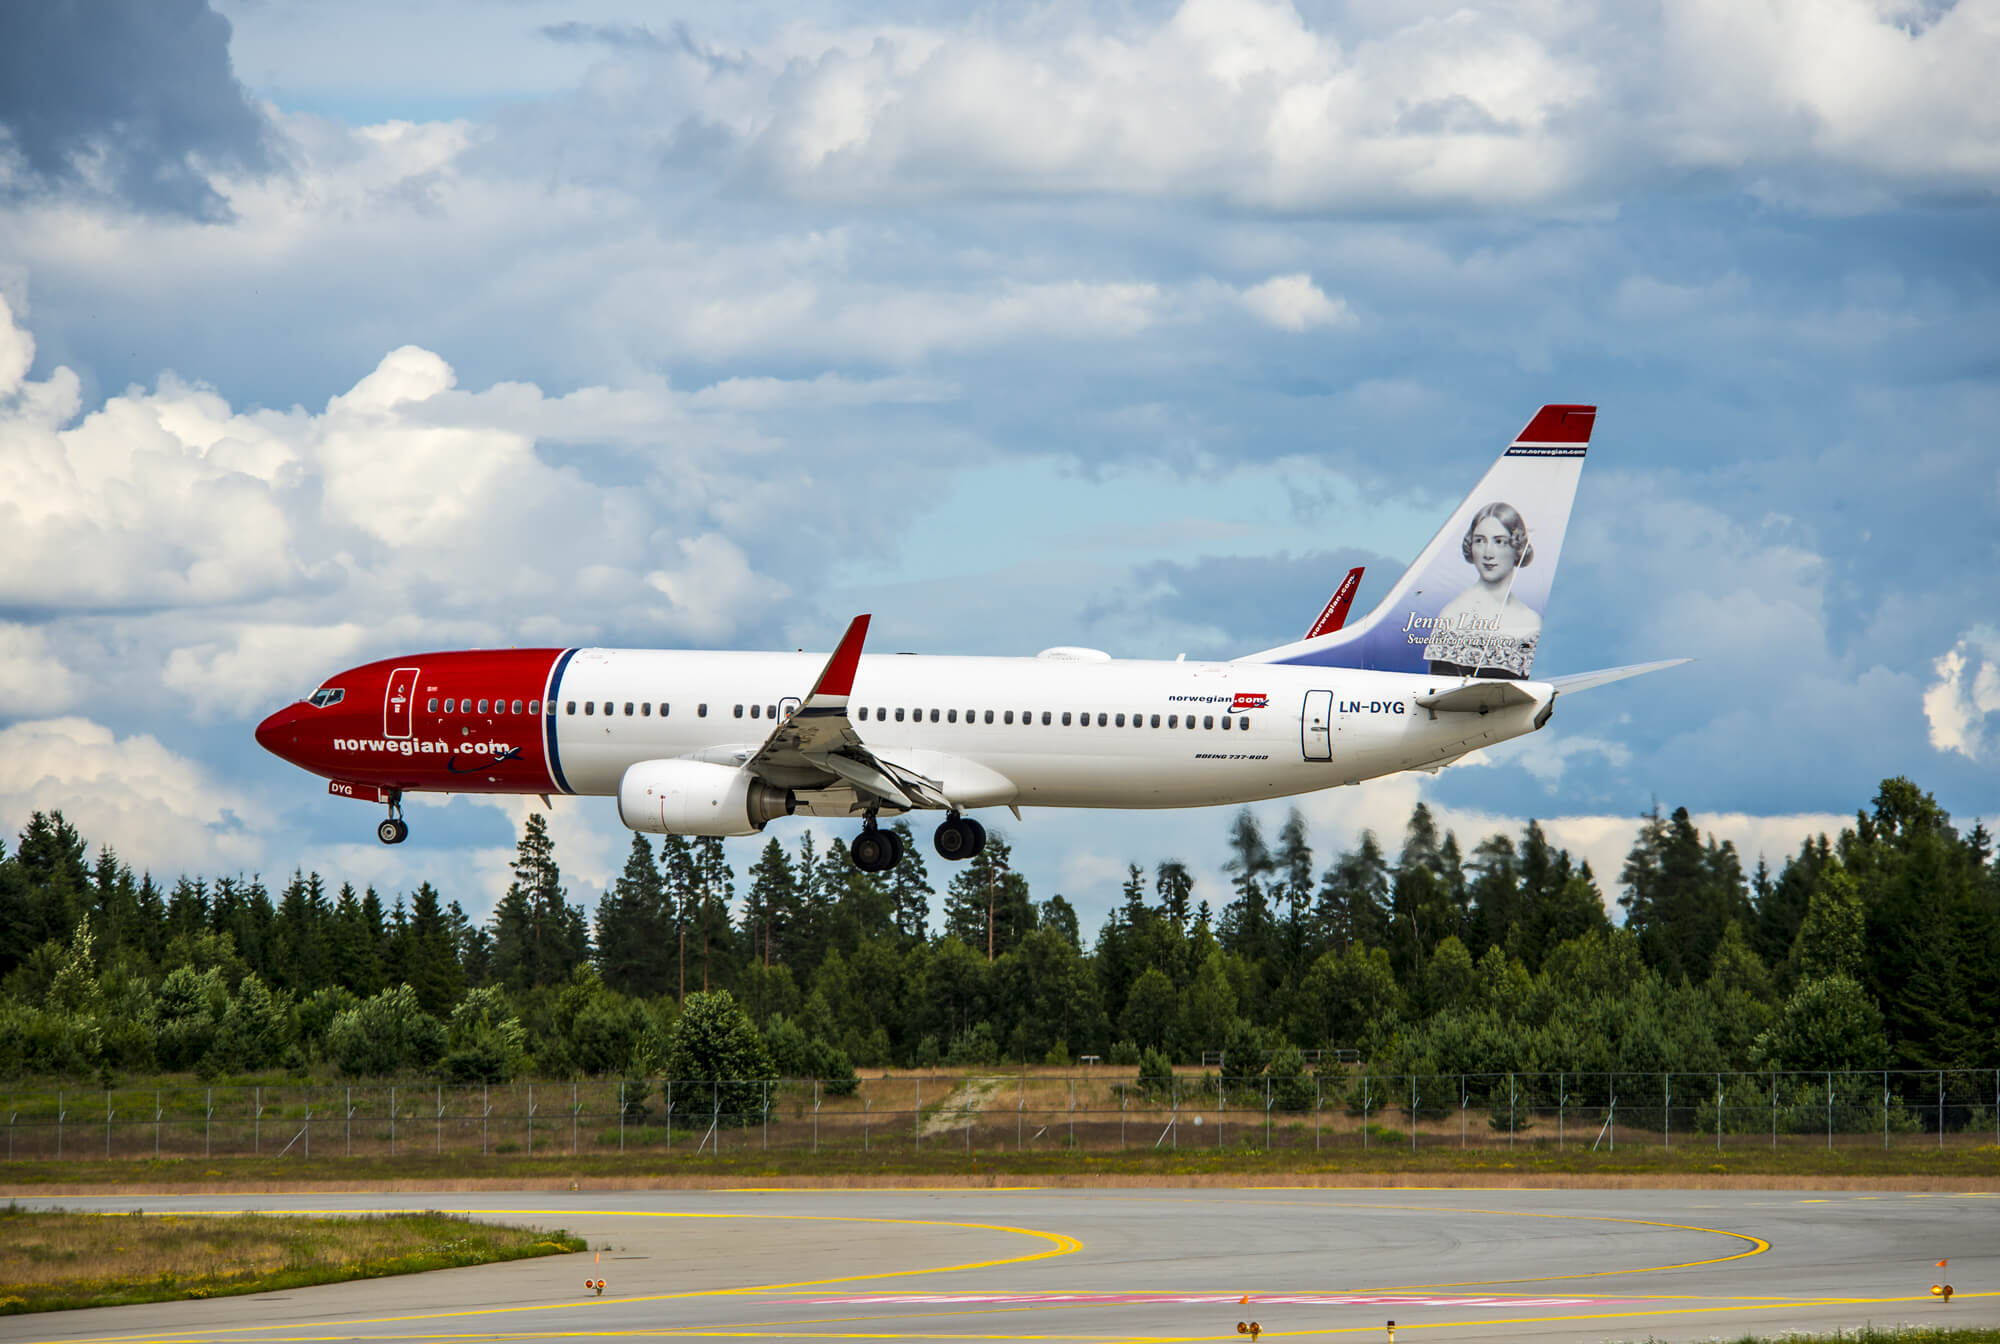 Resultado de imagen para norwegian cancela vuelos irlanda norteamerica